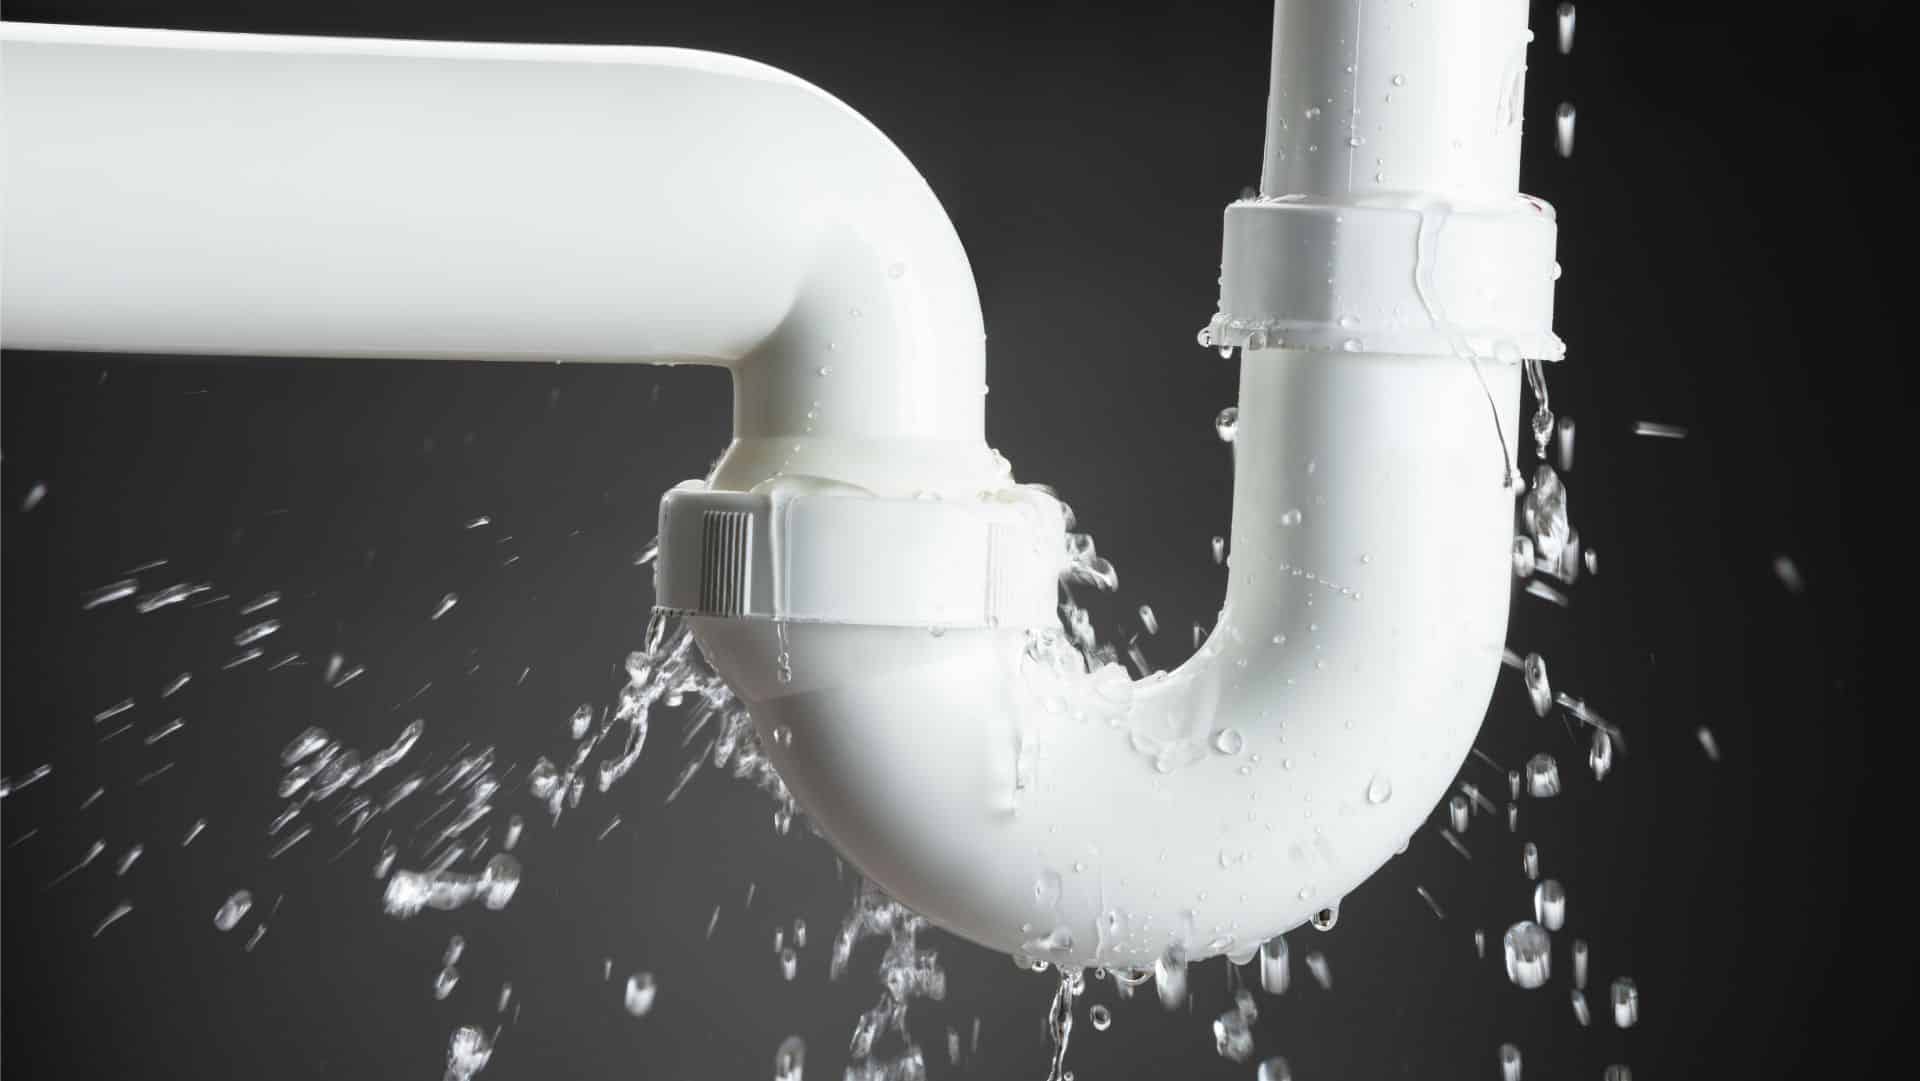 יוני אינסטלטור -תיקון צנרת מים ללא הרס - סיבות לבעיות בצנרת המים​